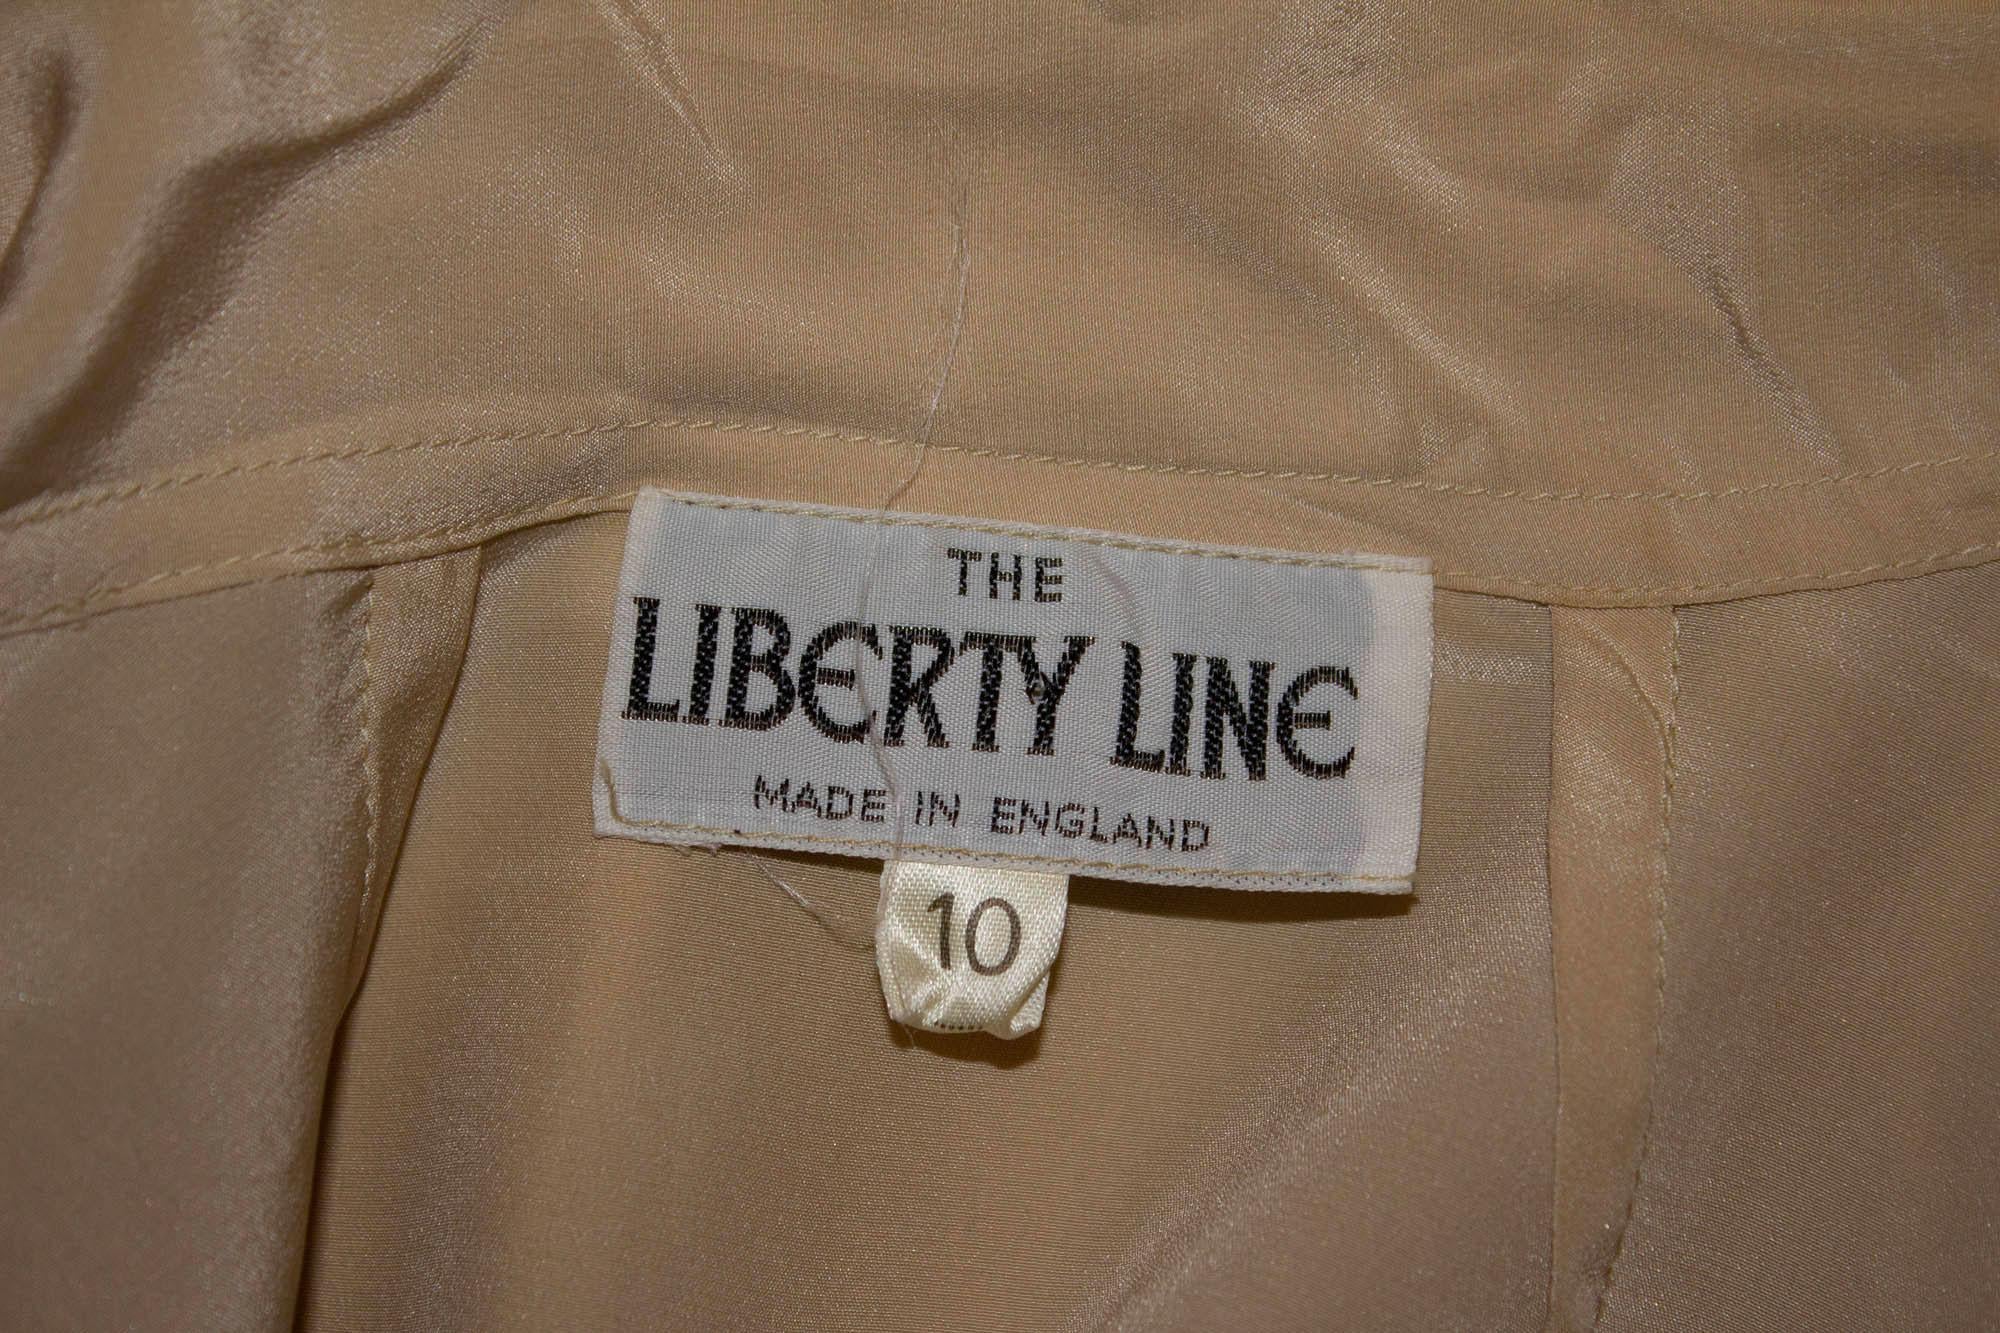 Un chemisier en soie vintage super doux de Liberty of London. Le chemisier est doté d'une cravate, de poignets boutonnés et d'une ouverture à boutons sur le devant. Mesures : Poitrine 36'', longueur 22''